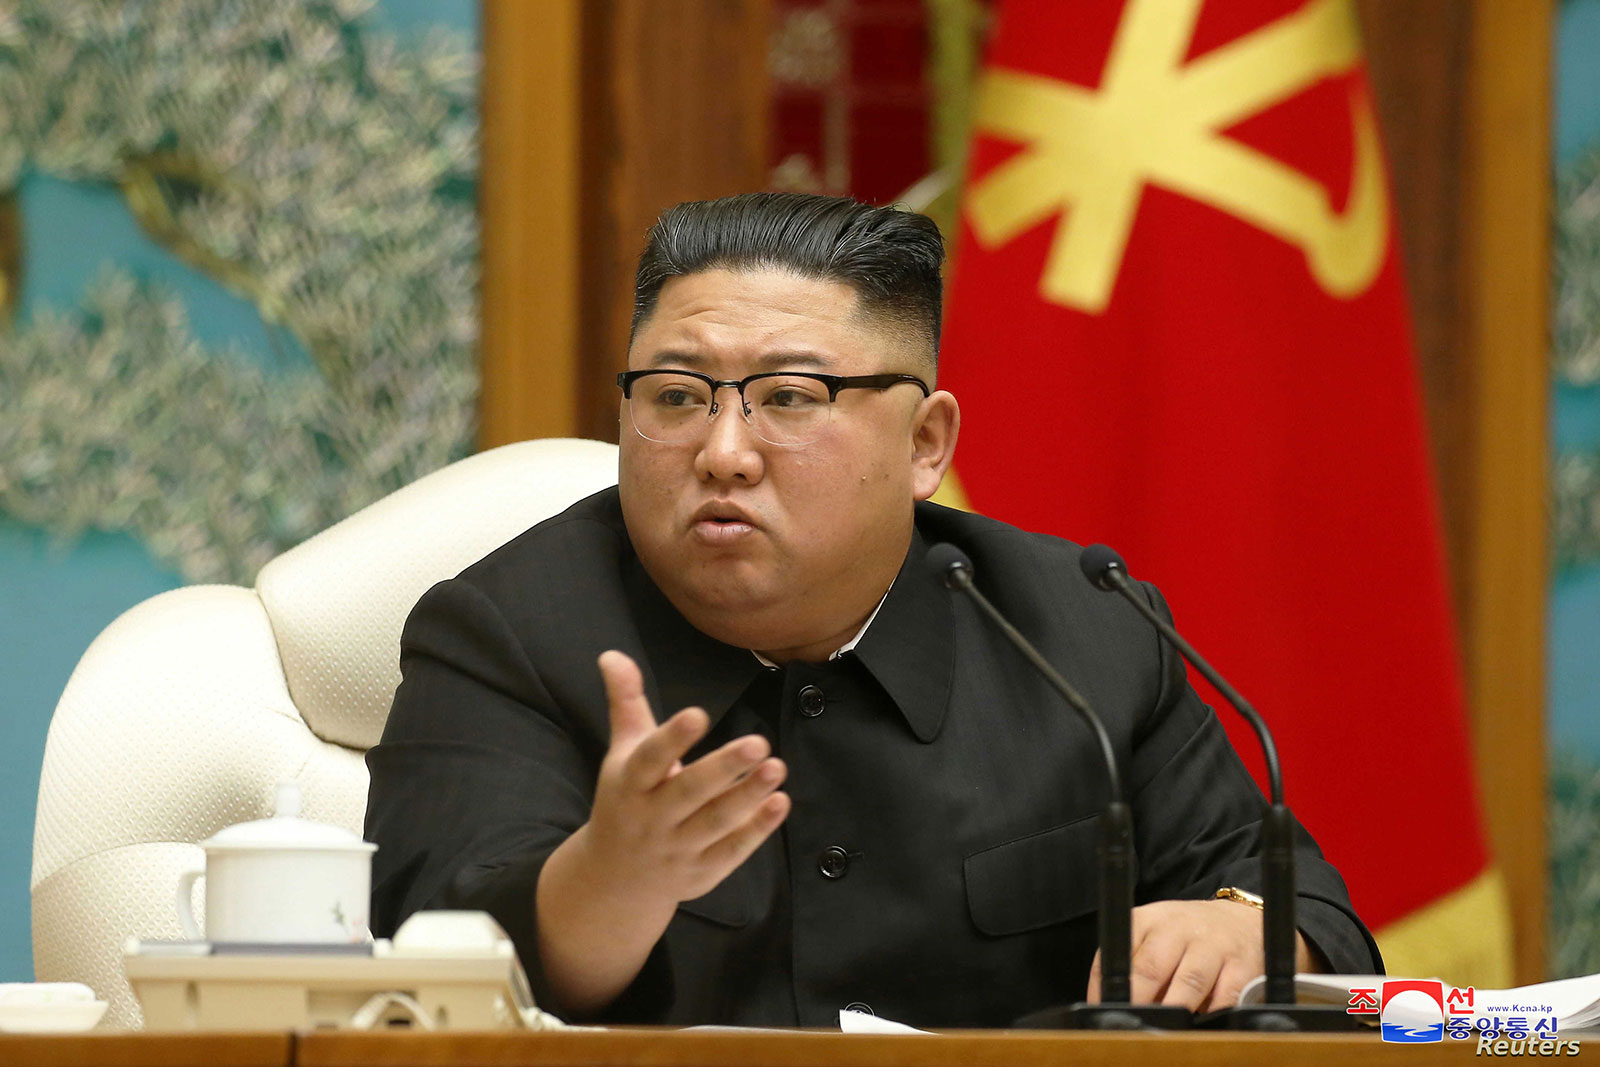 الزعيم الشمالي يكرر تهديده: سنستخدم النووي "بشكل استباقي"